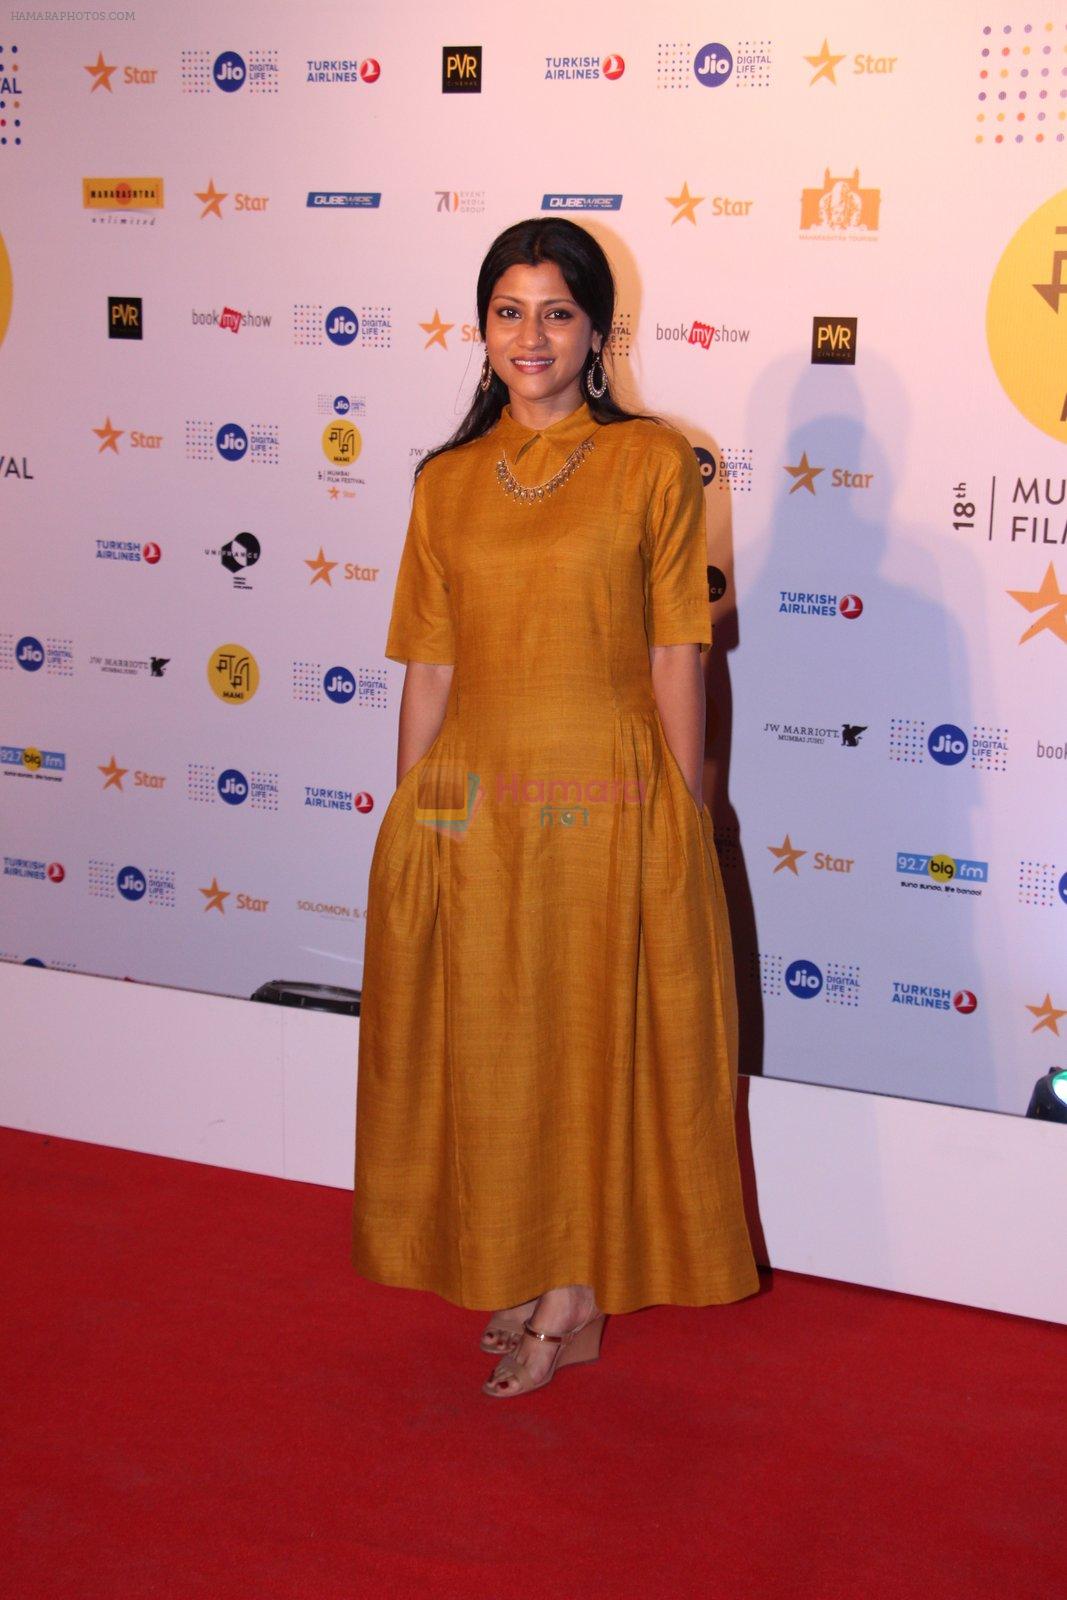 Konkona Sen Sharma at closing ceremony of MAMI Film Festival 2016 on 27th Oct 2016